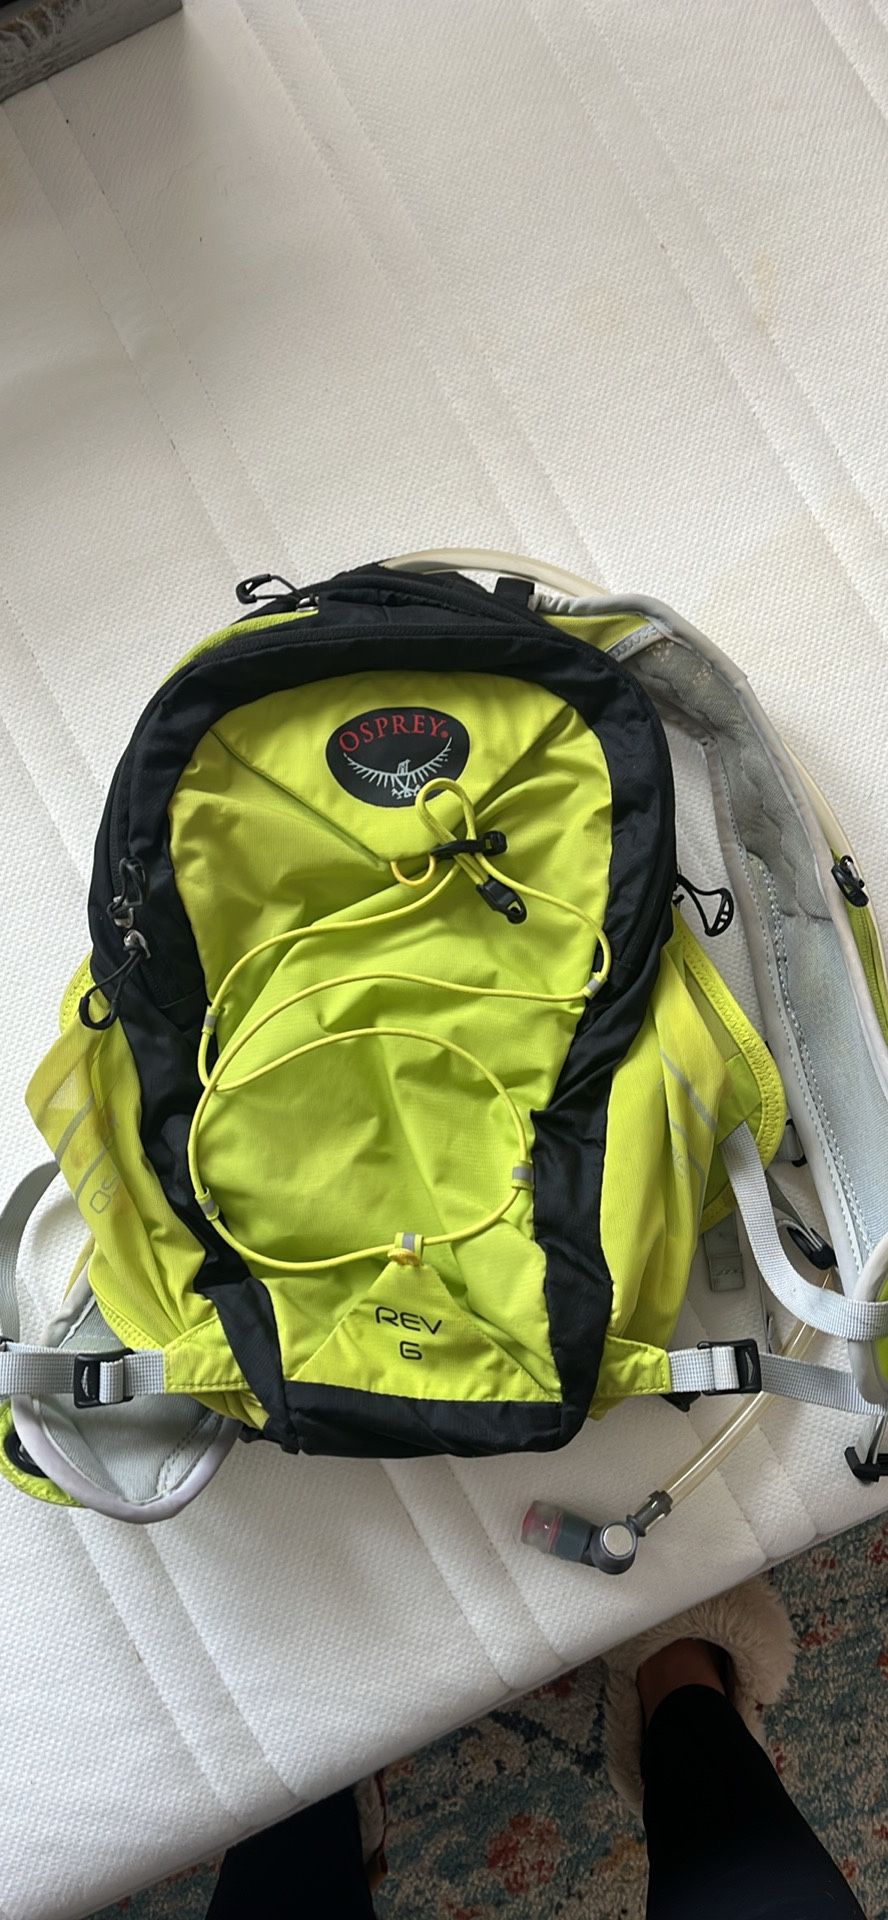 Osprey Rev 6 Backpack With 1.5L Bladder. 